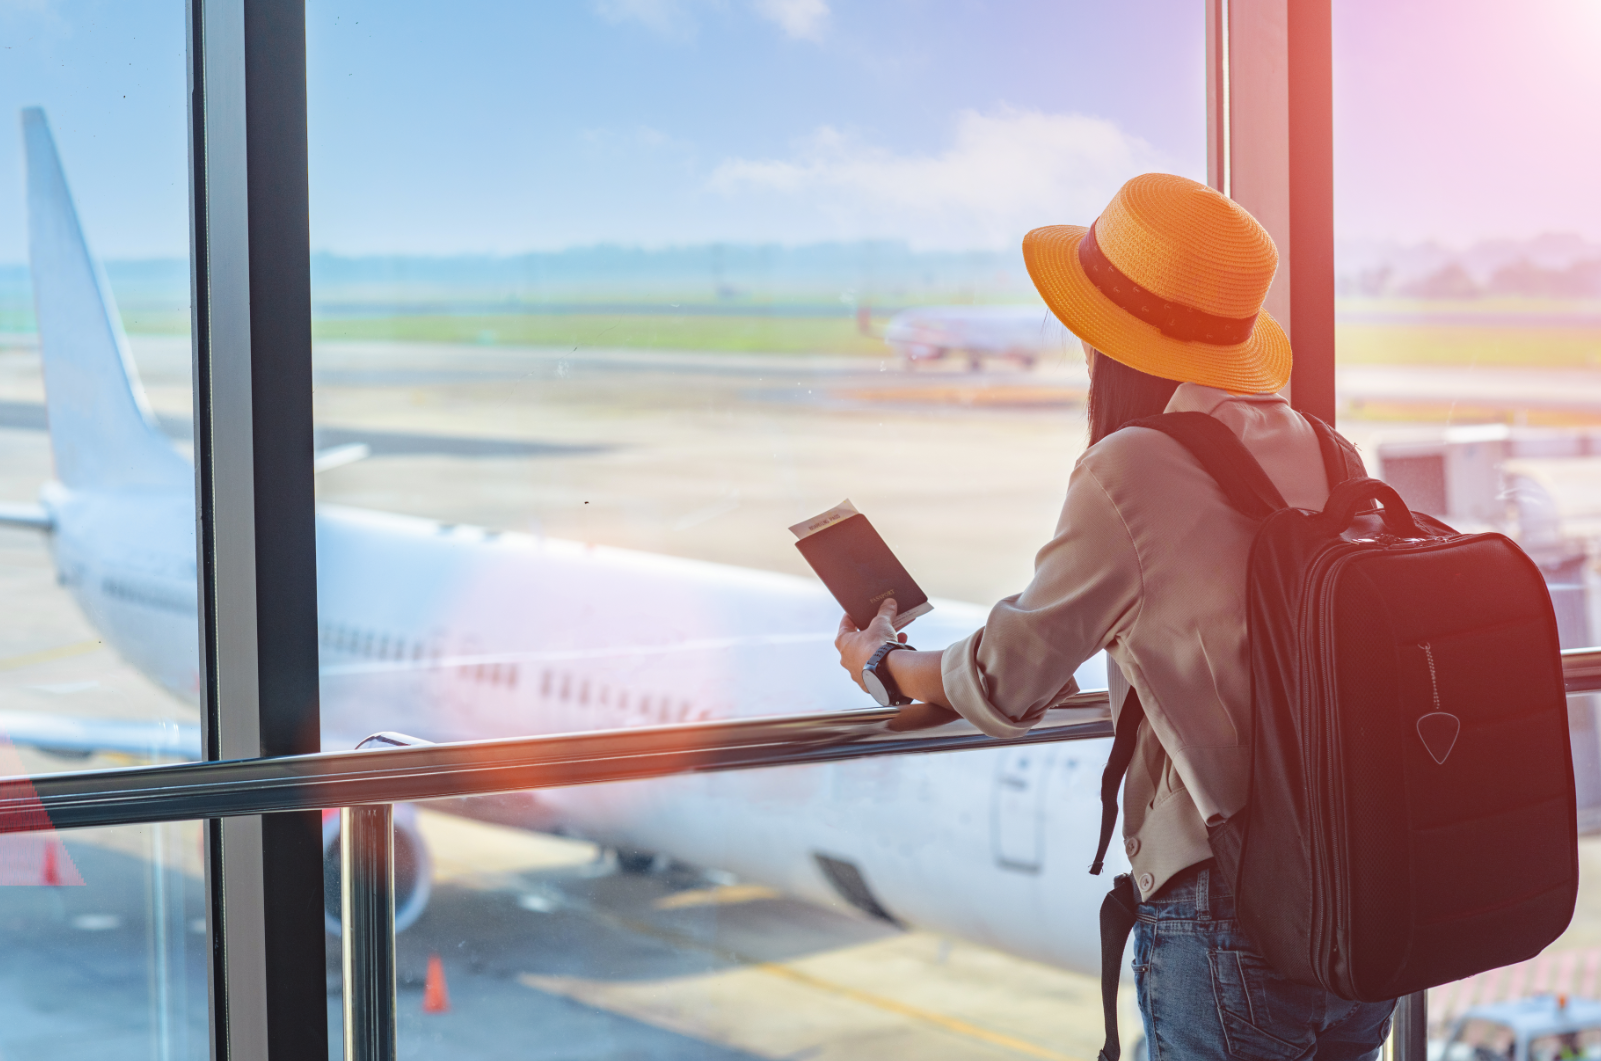 Dziewczyna z paszportem w ręku i dużym plecakiem patrzy na znajdujący się na płycie lotniska samolot